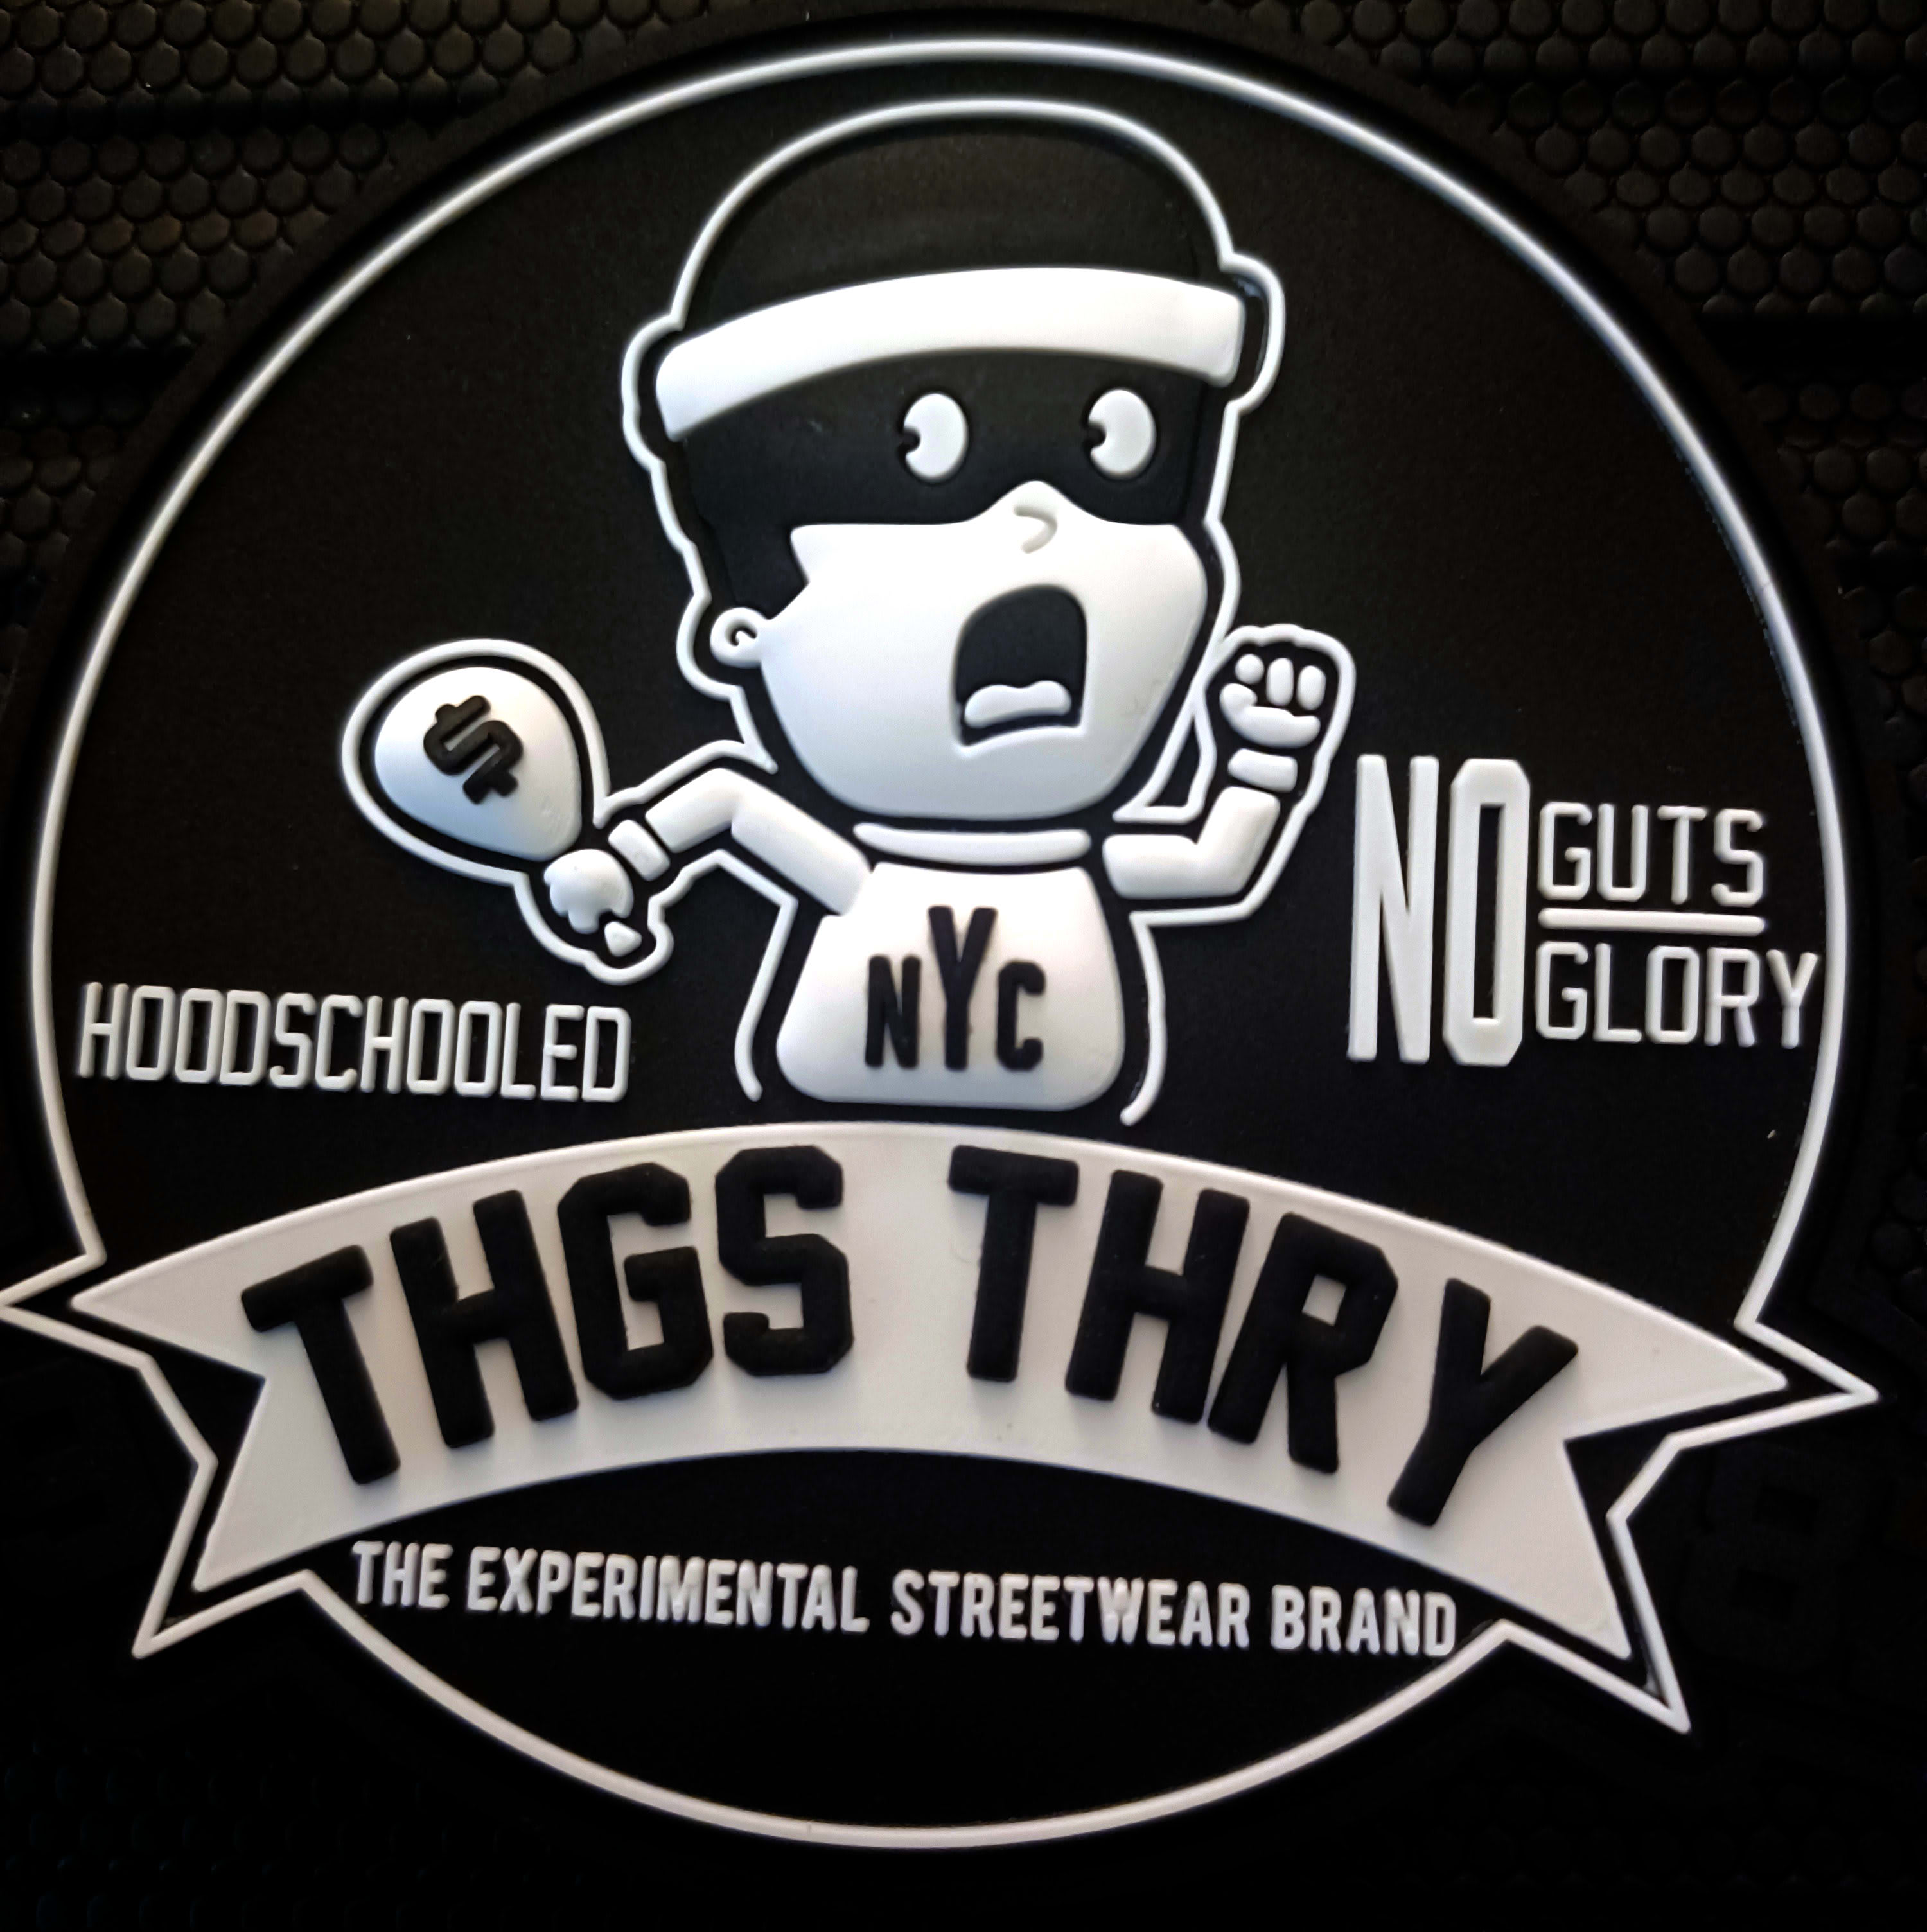 THGSTHRY LLC